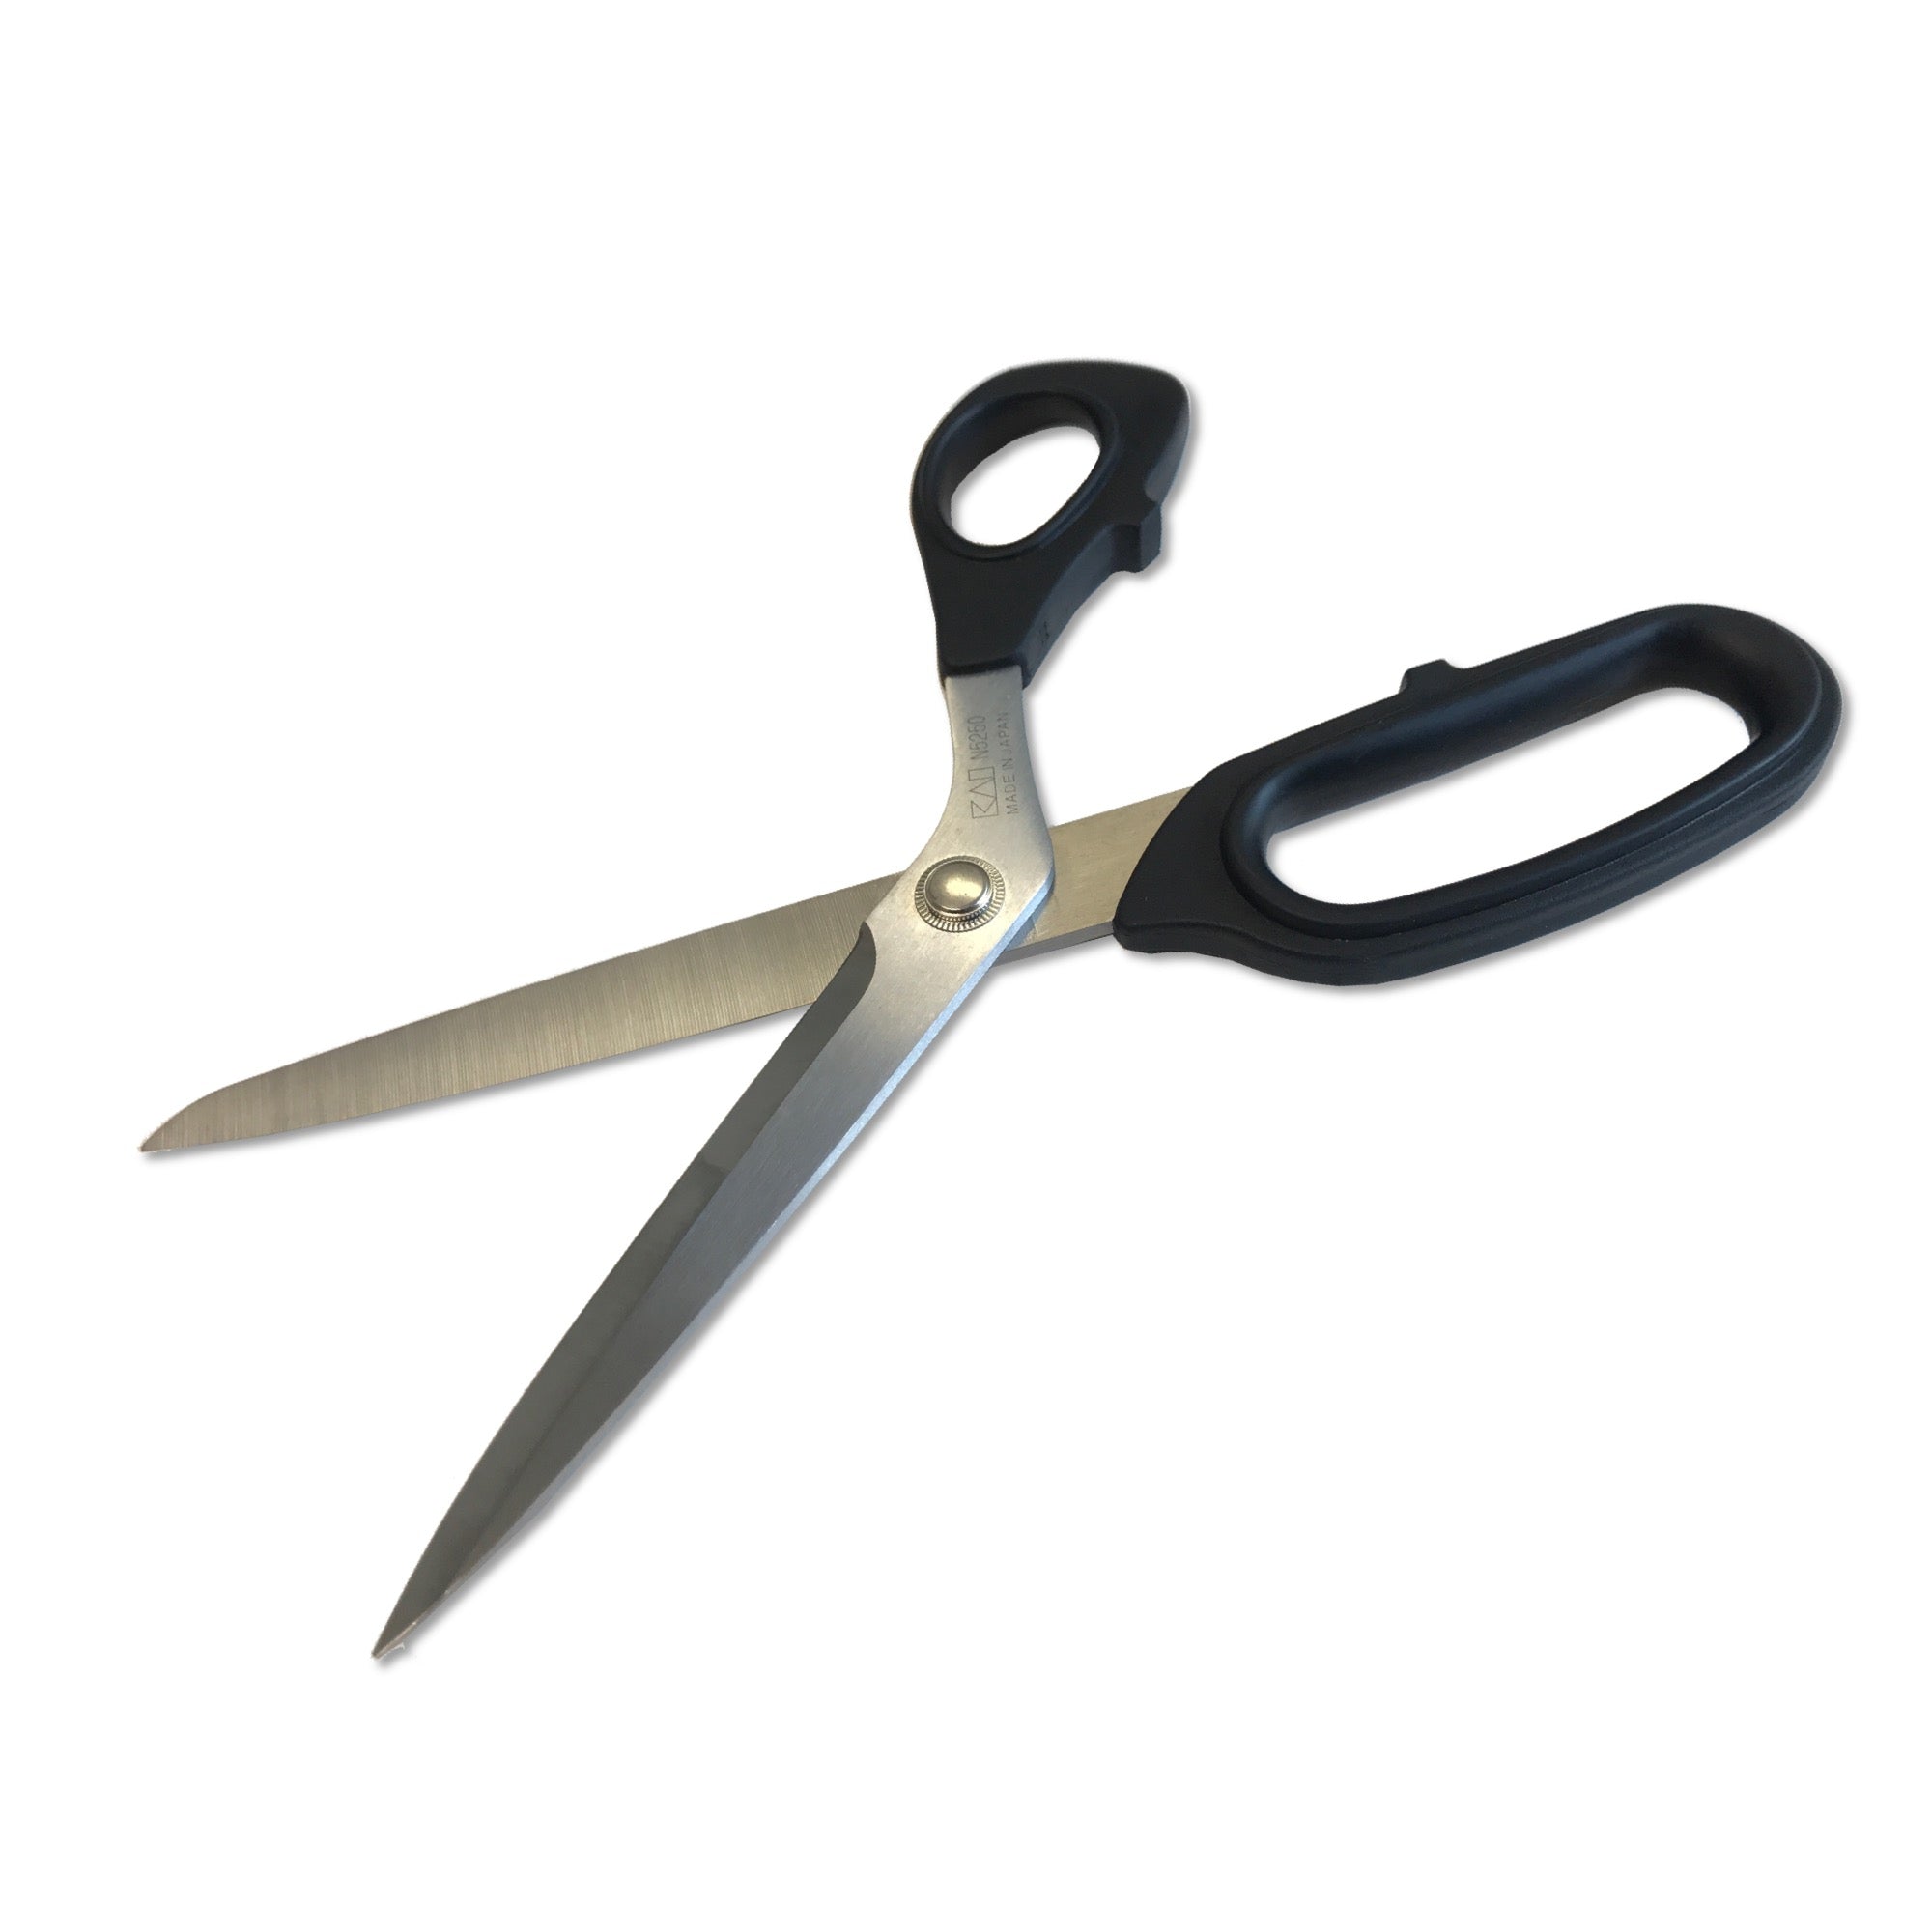 KAI SCISSORS - All scissors